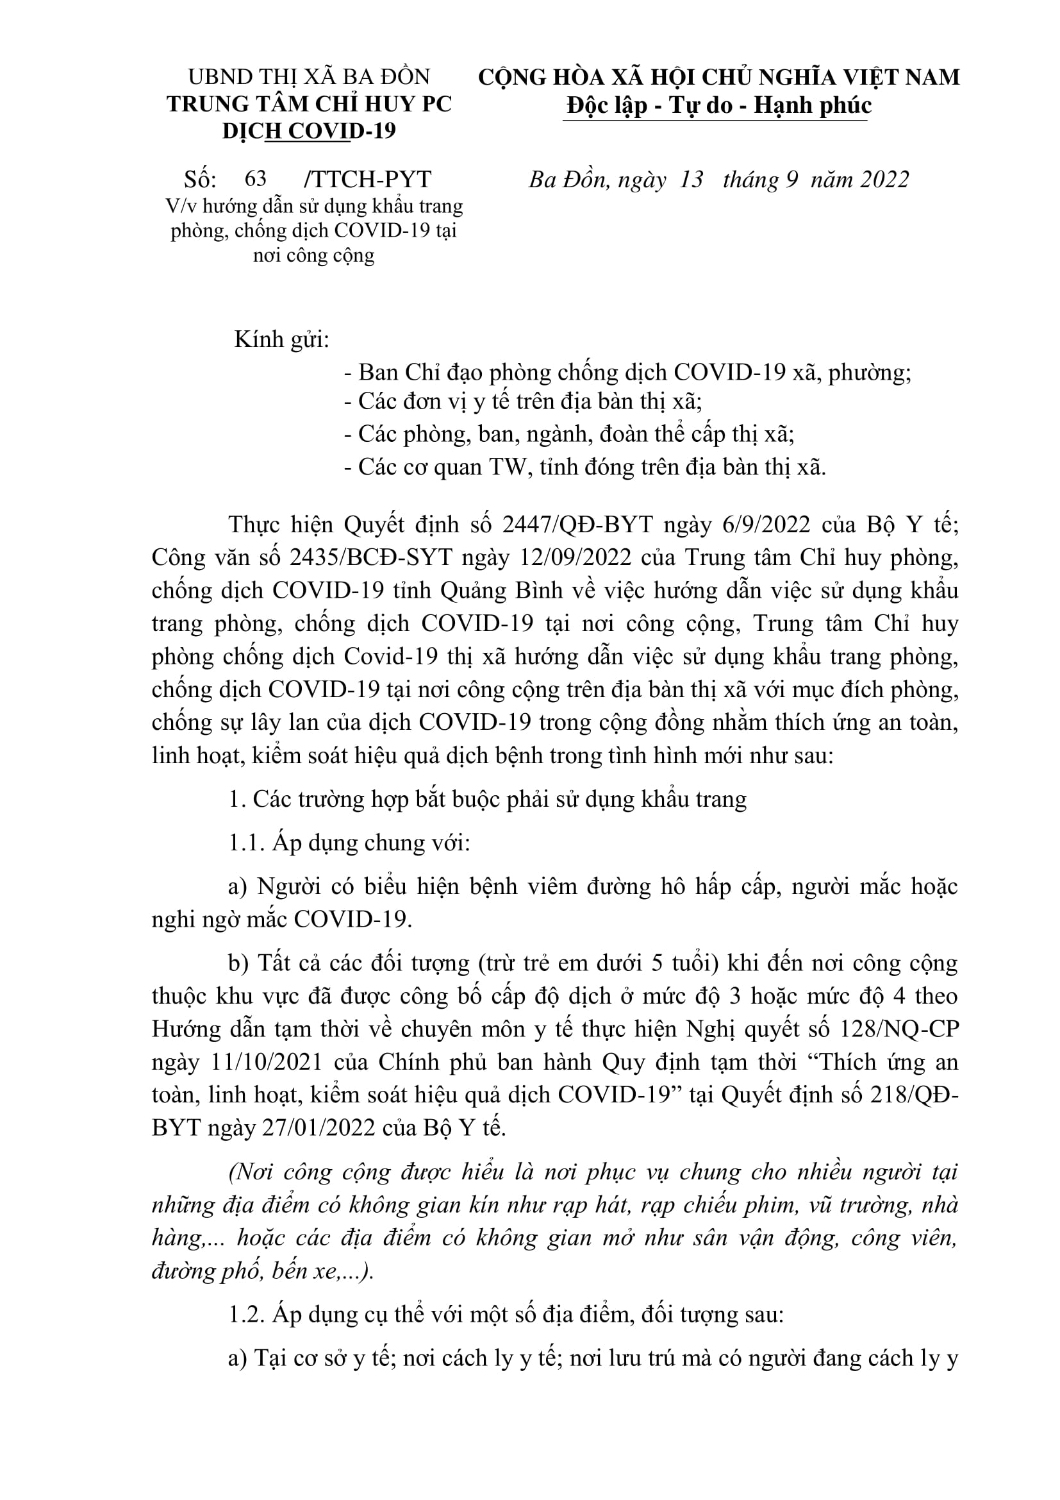 CV HD DEO KHAU TRANG PC DICH COVID 19 NOI CONG CONG 13 9(13 09 2022 16h29p15) signed 1